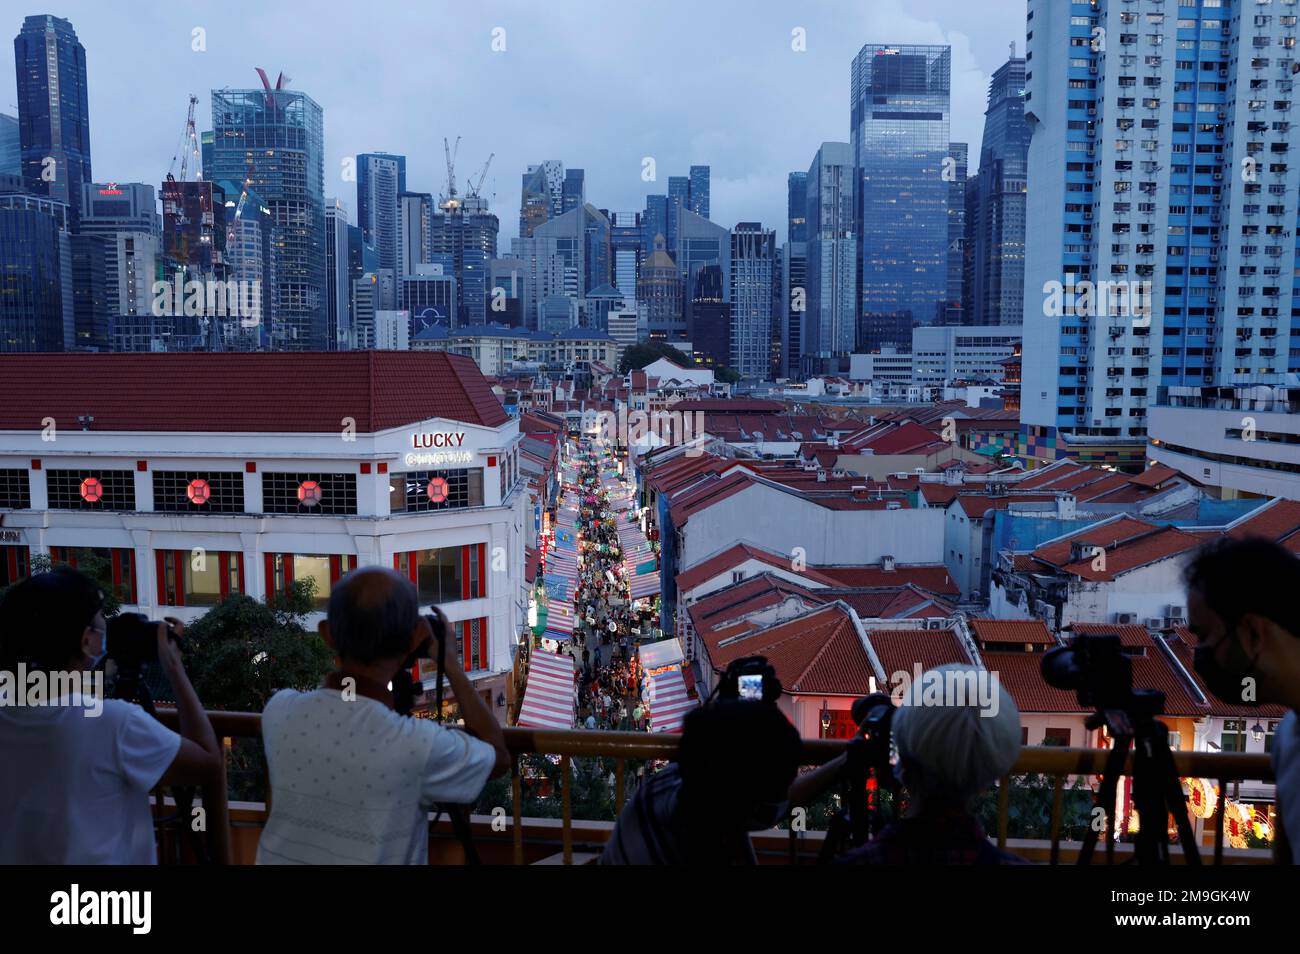 Los entusiastas de la fotografía toman fotos de la multitud de compras en Chinatown antes del Año Nuevo Lunar en Singapur el 18 de enero de 2023. REUTERS/Edgar Su Foto de stock